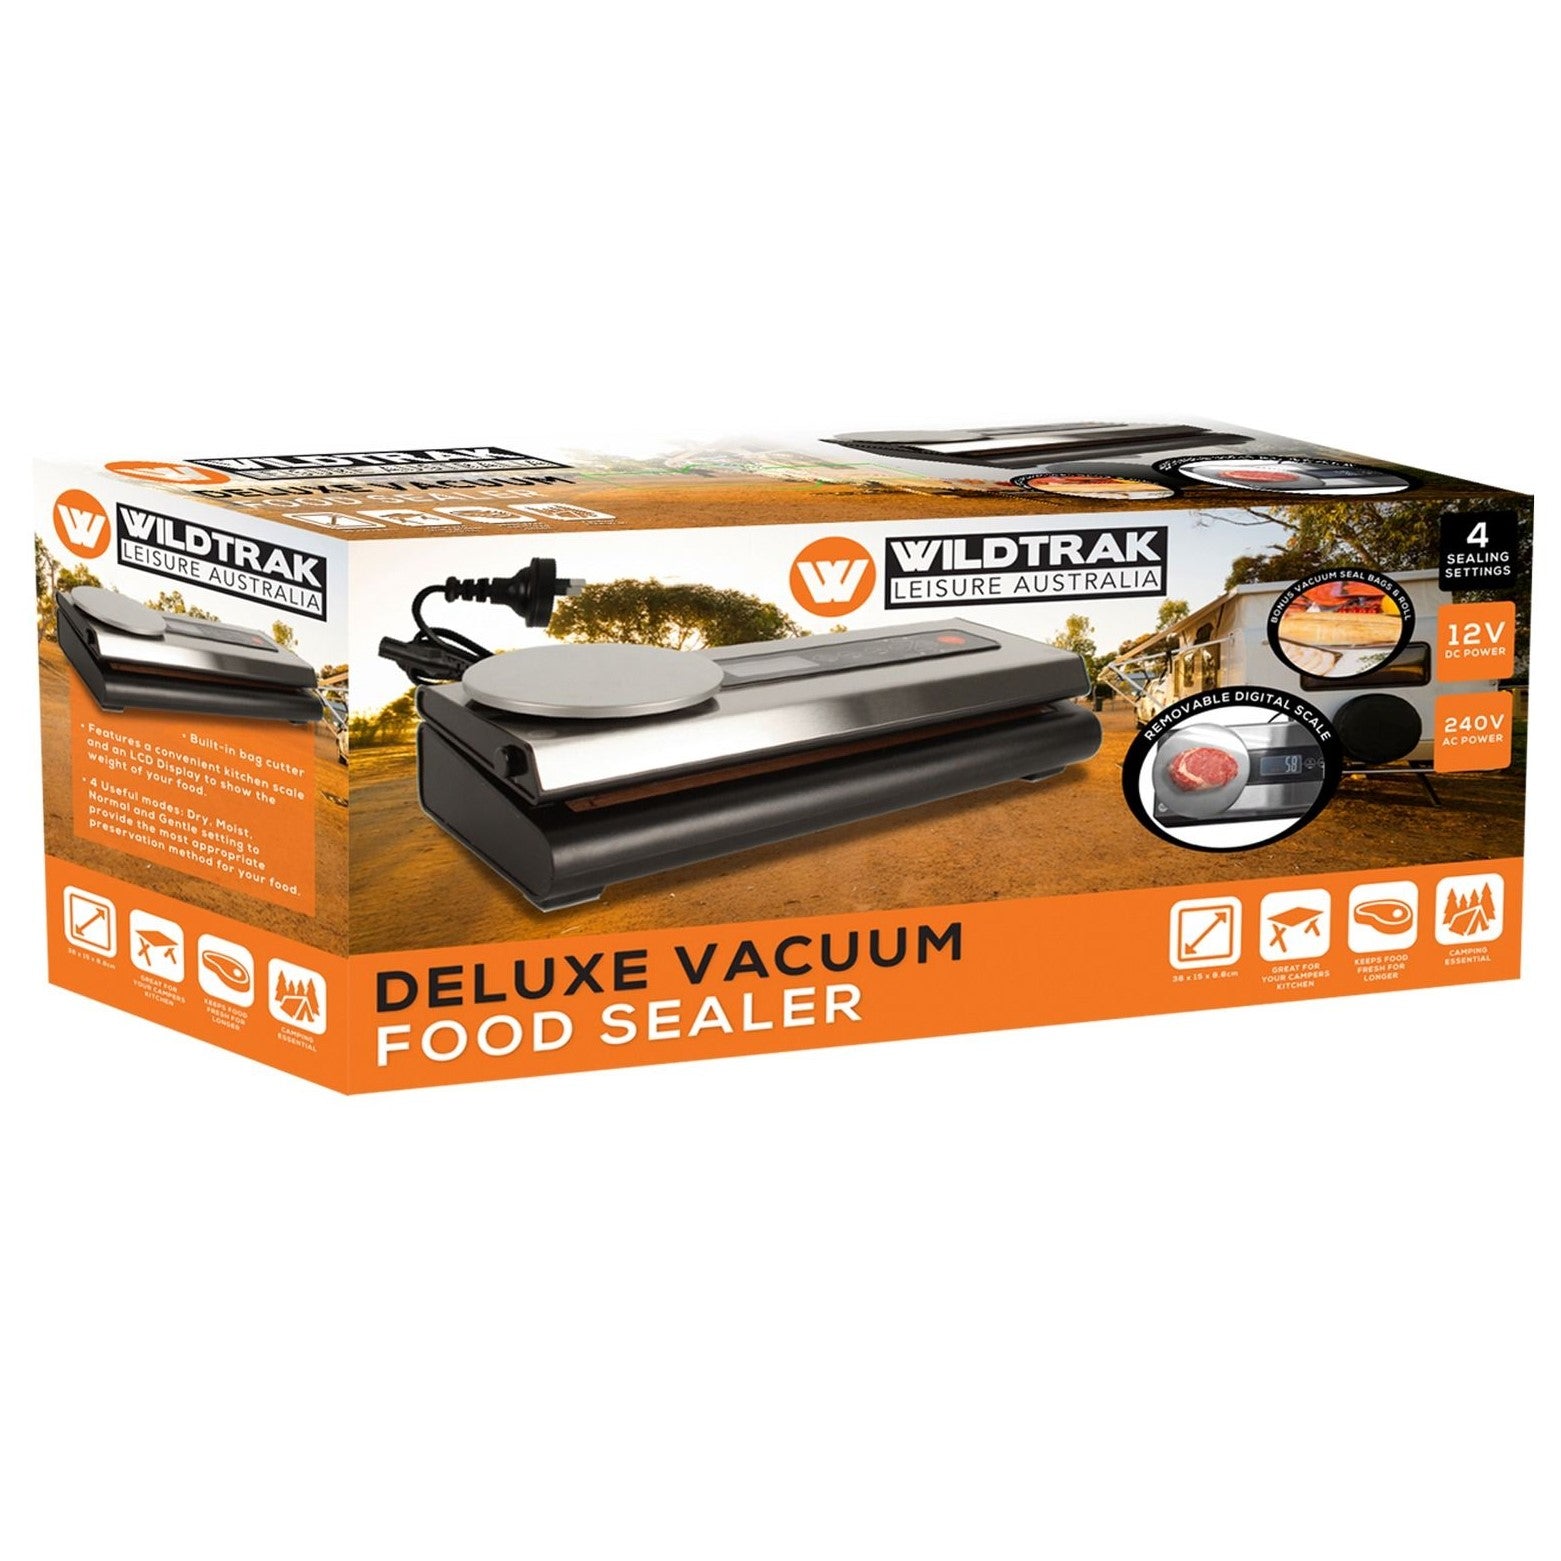 Wildtrak Deluxe Vacuum Sealer With Scale